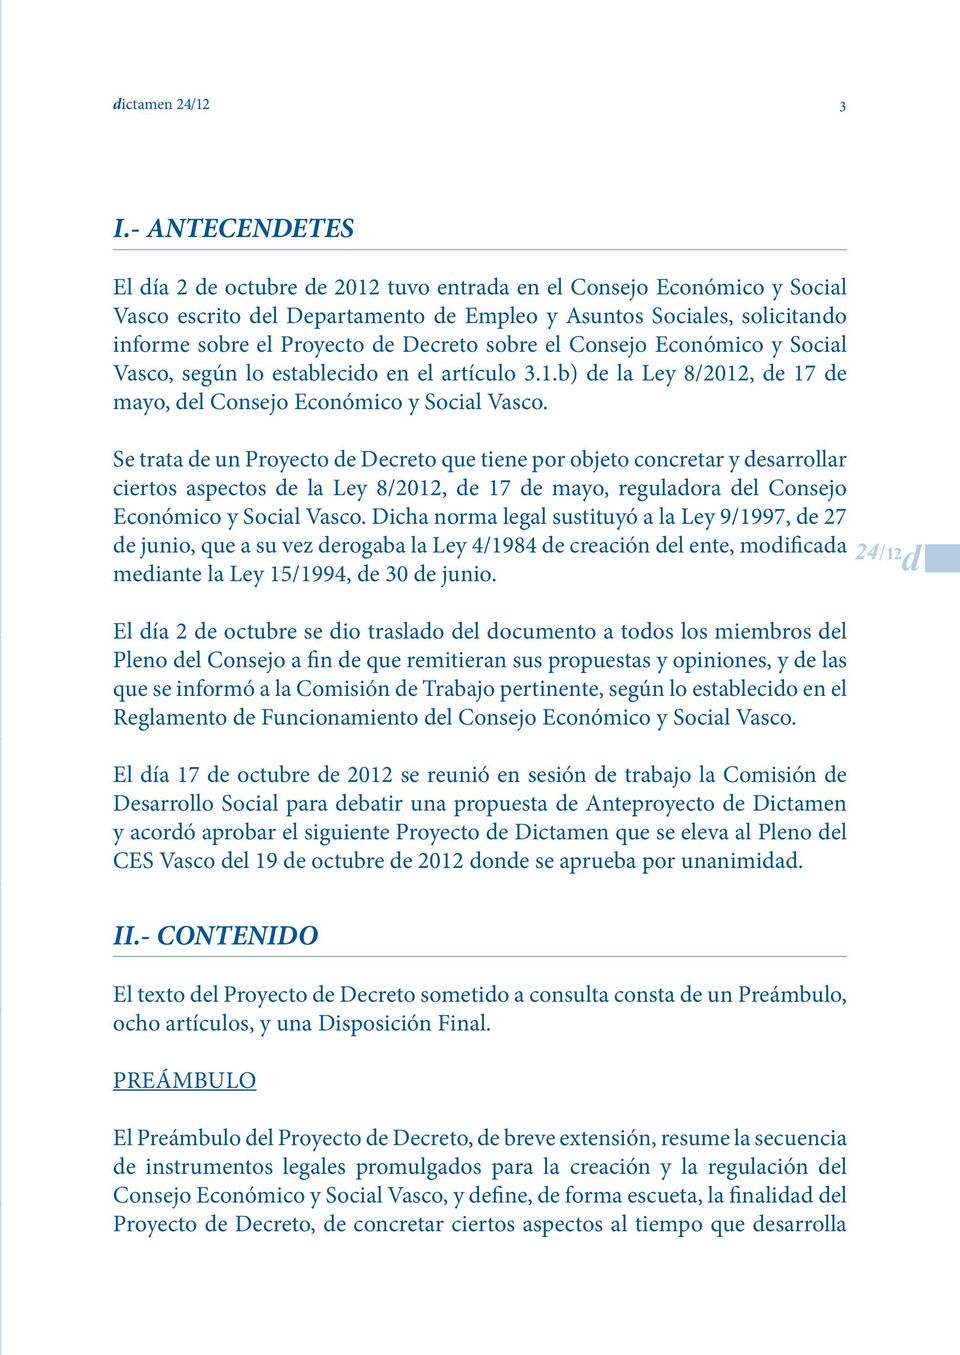 sobre el Consejo Económico y Social Vasco, según lo establecido en el artículo 3.1.b) de la Ley 8/2012, de 17 de mayo, del Consejo Económico y Social Vasco.